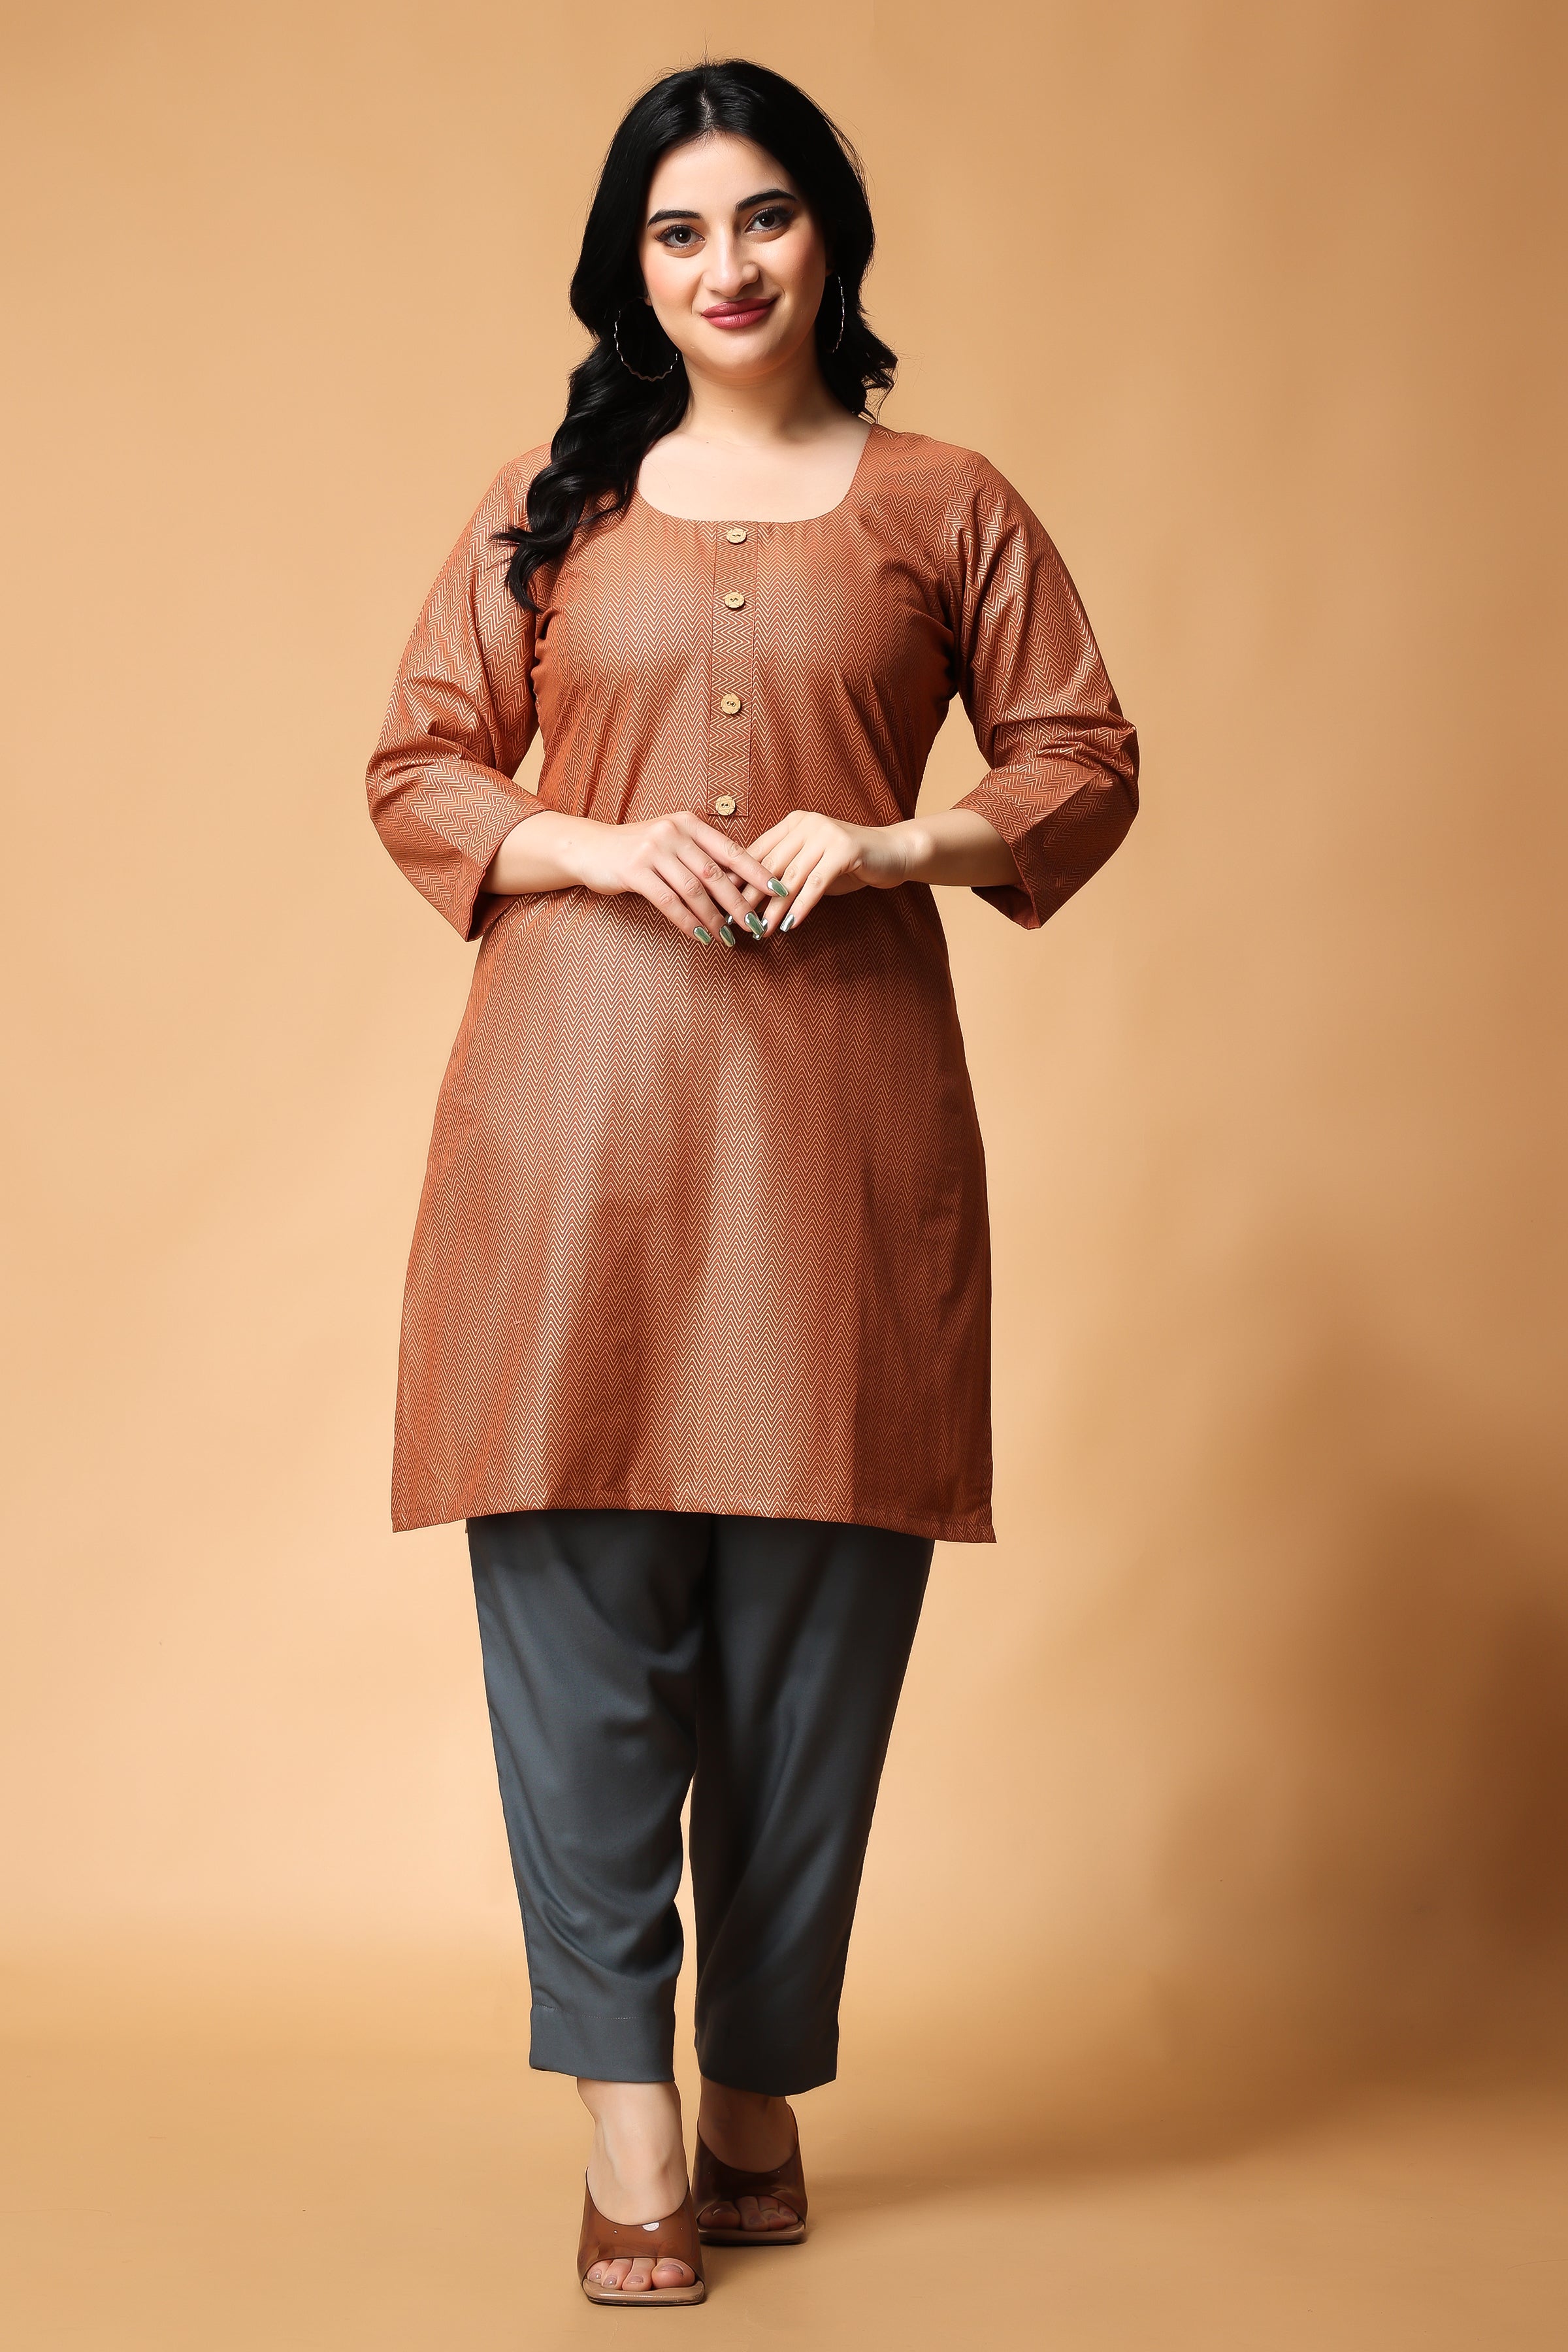 Meenabazaar - Online Ethinc Shopping for Women's